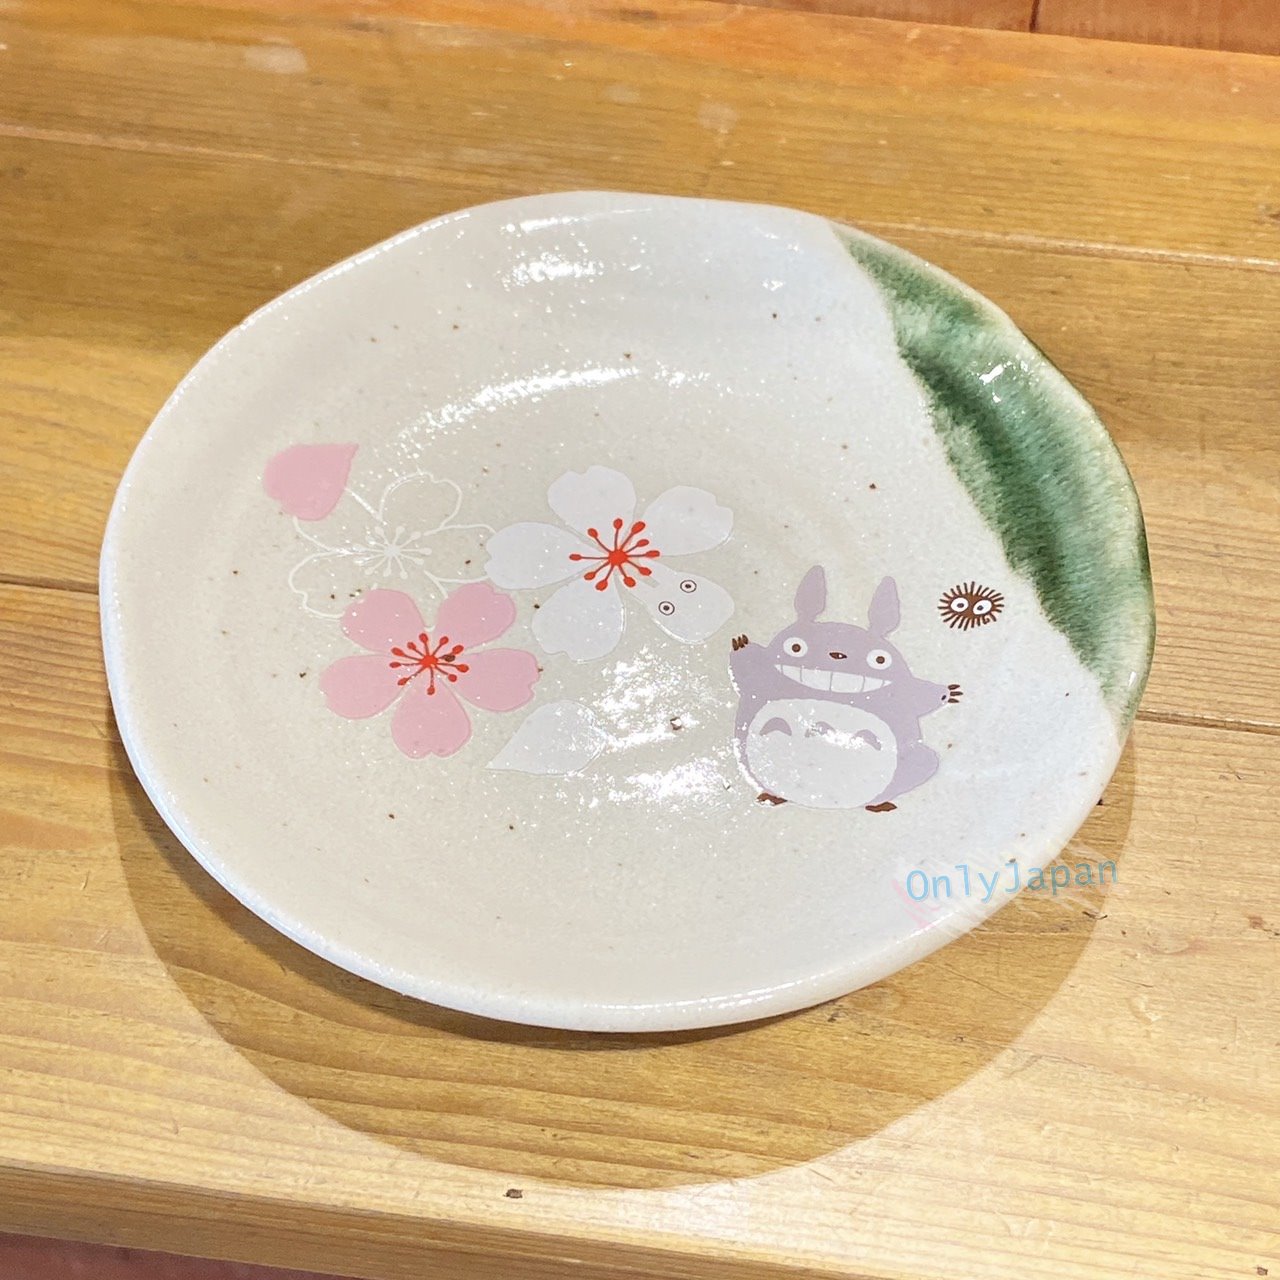 真愛日本 宮崎駿 吉卜力 日本製 美濃燒陶器 美濃燒盤 龍貓 小皿 陶瓷小皿 龍貓和風櫻花 陶器盤 盤子 水果盤